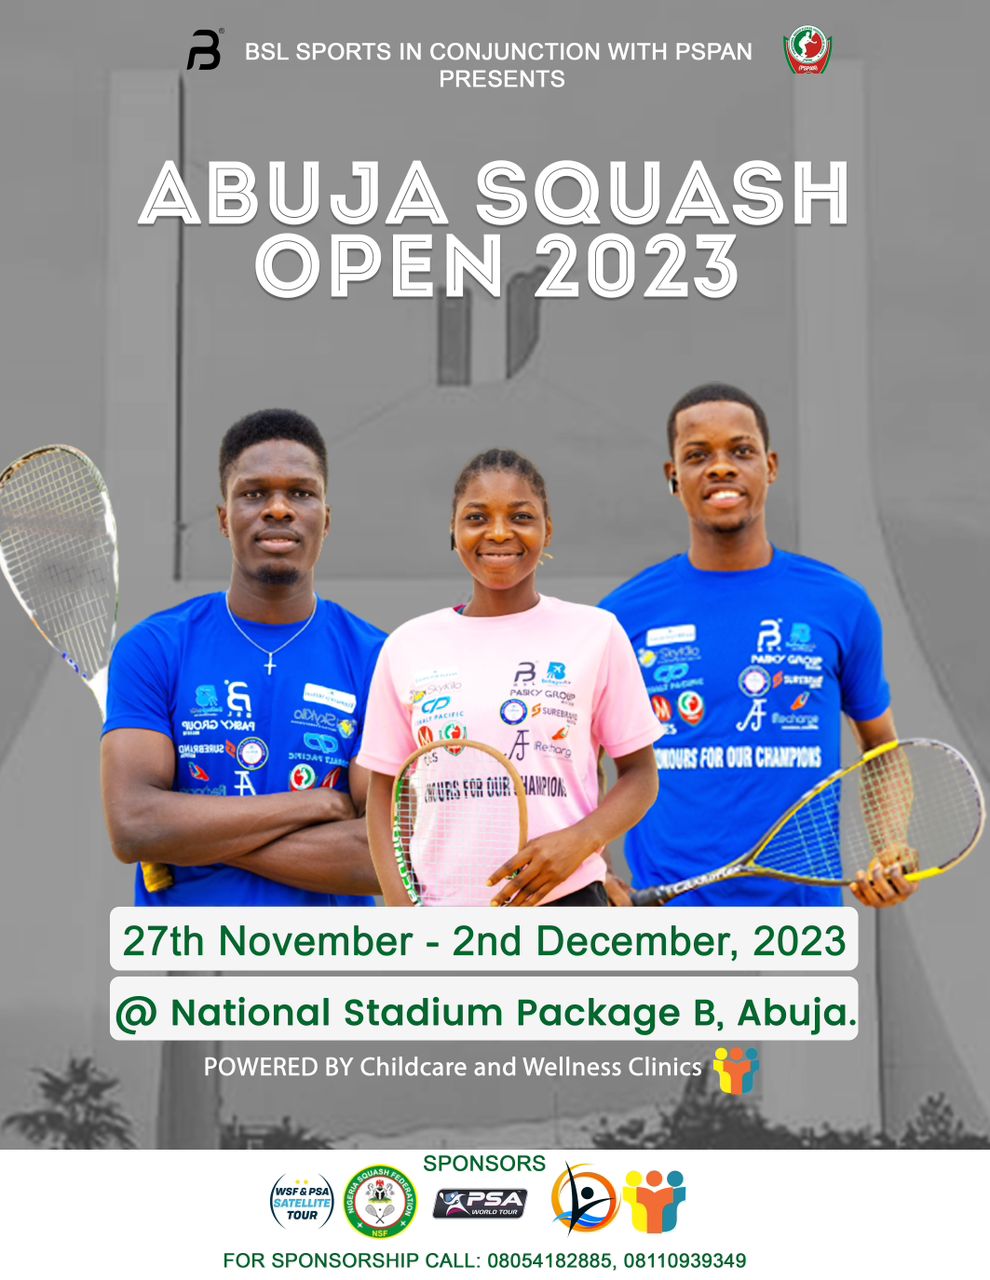 Abuja Squash Open 2023